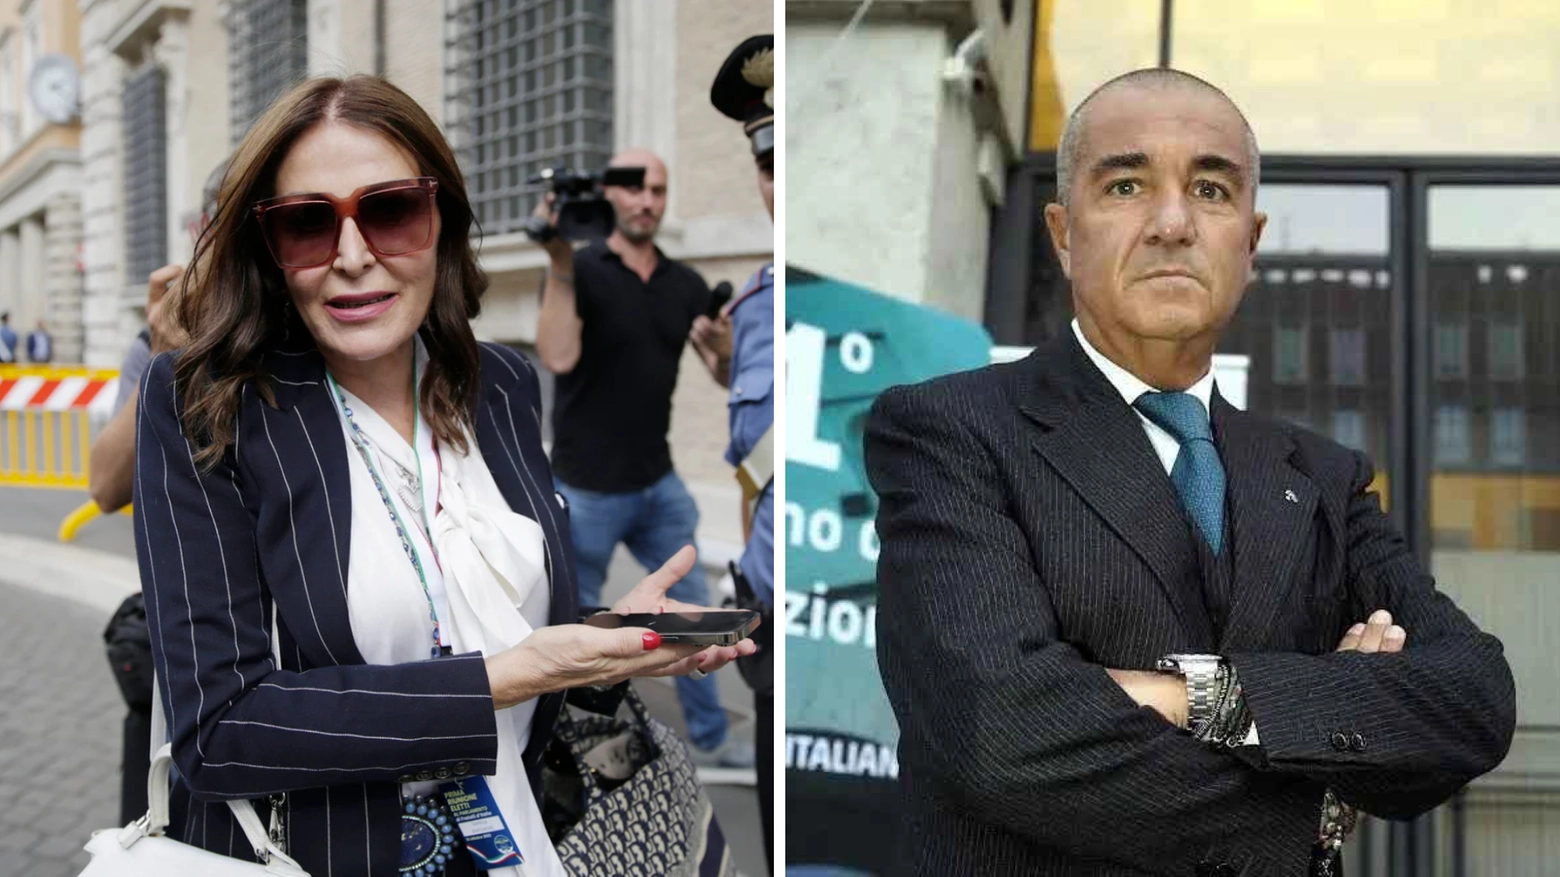 La ministra del Turismo Daniela Santanché e Luca Ruffino (morto suicida) si sono avvicendati alla guida di Visibilia